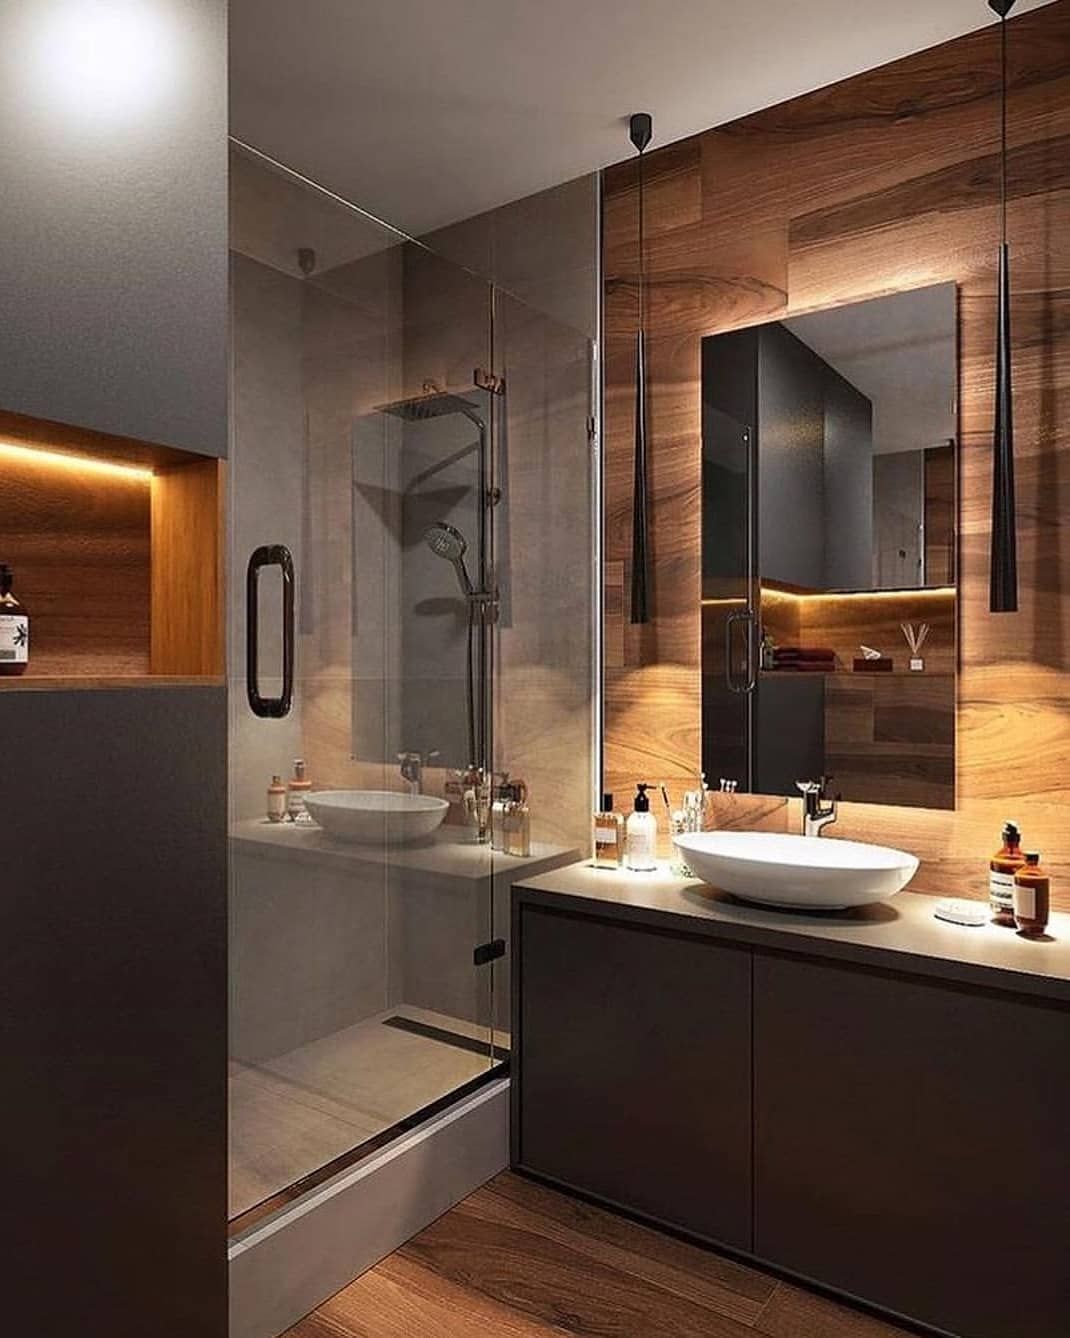 Phòng tắm, vệ sinh trong nhà vườn 1 tầng được thiết kế sang trọng, tiện nghi như spa.